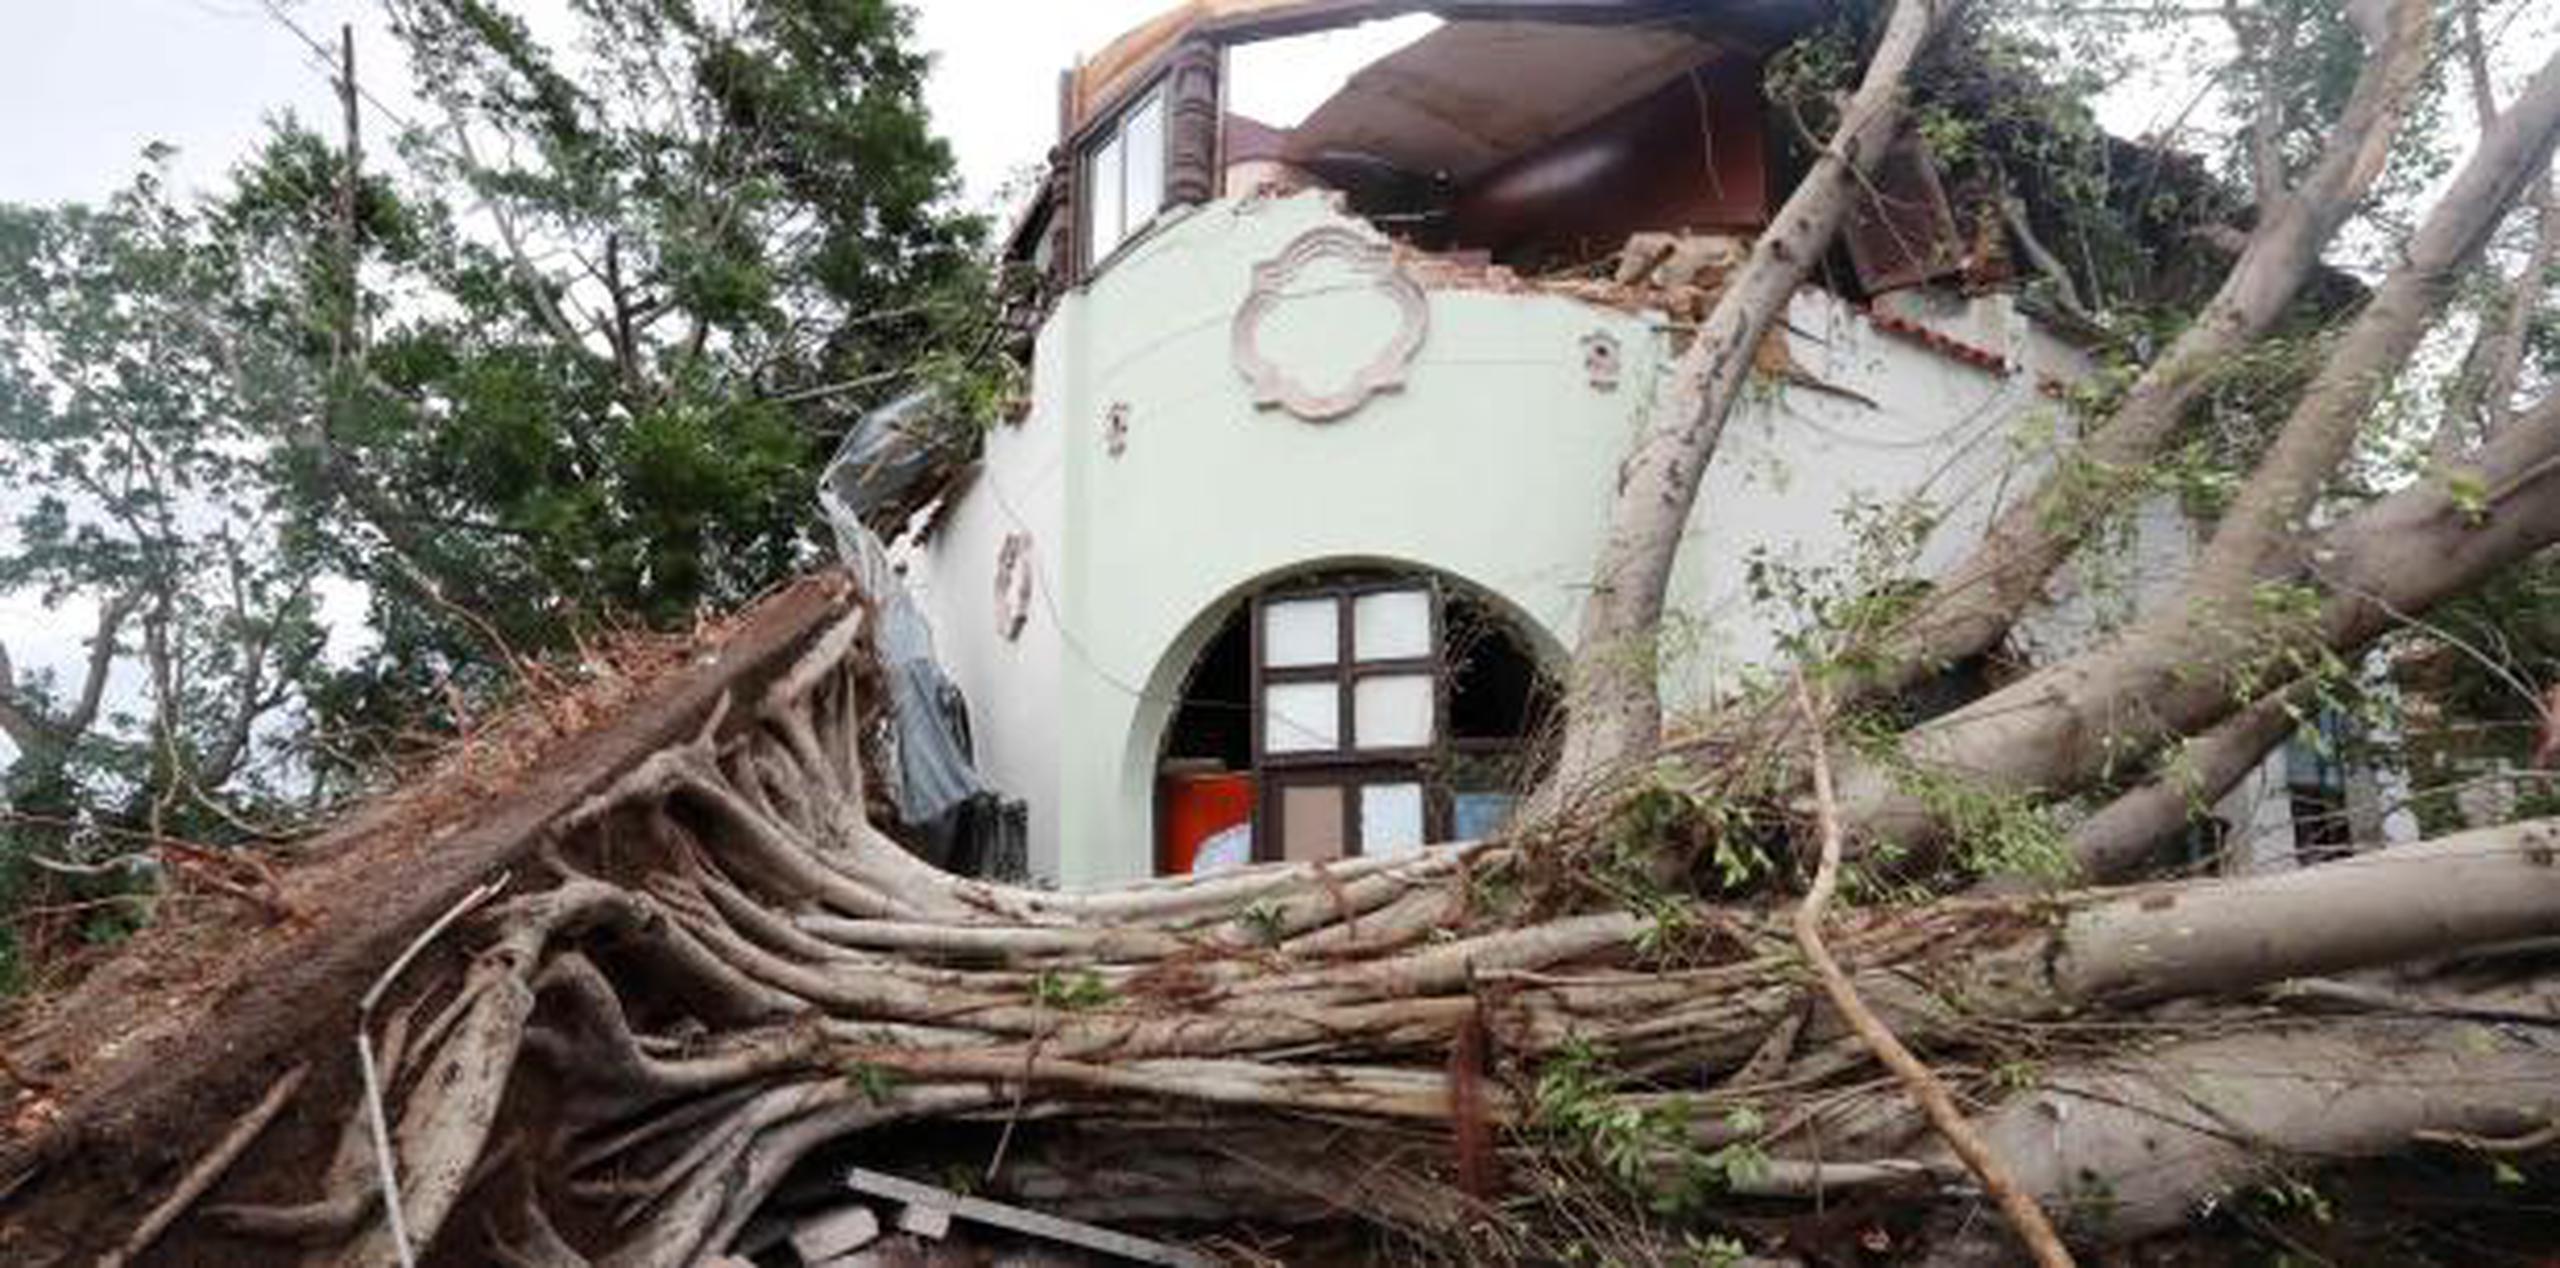 Asciende la cifra de muertos y heridos por devastador tornado en Cuba